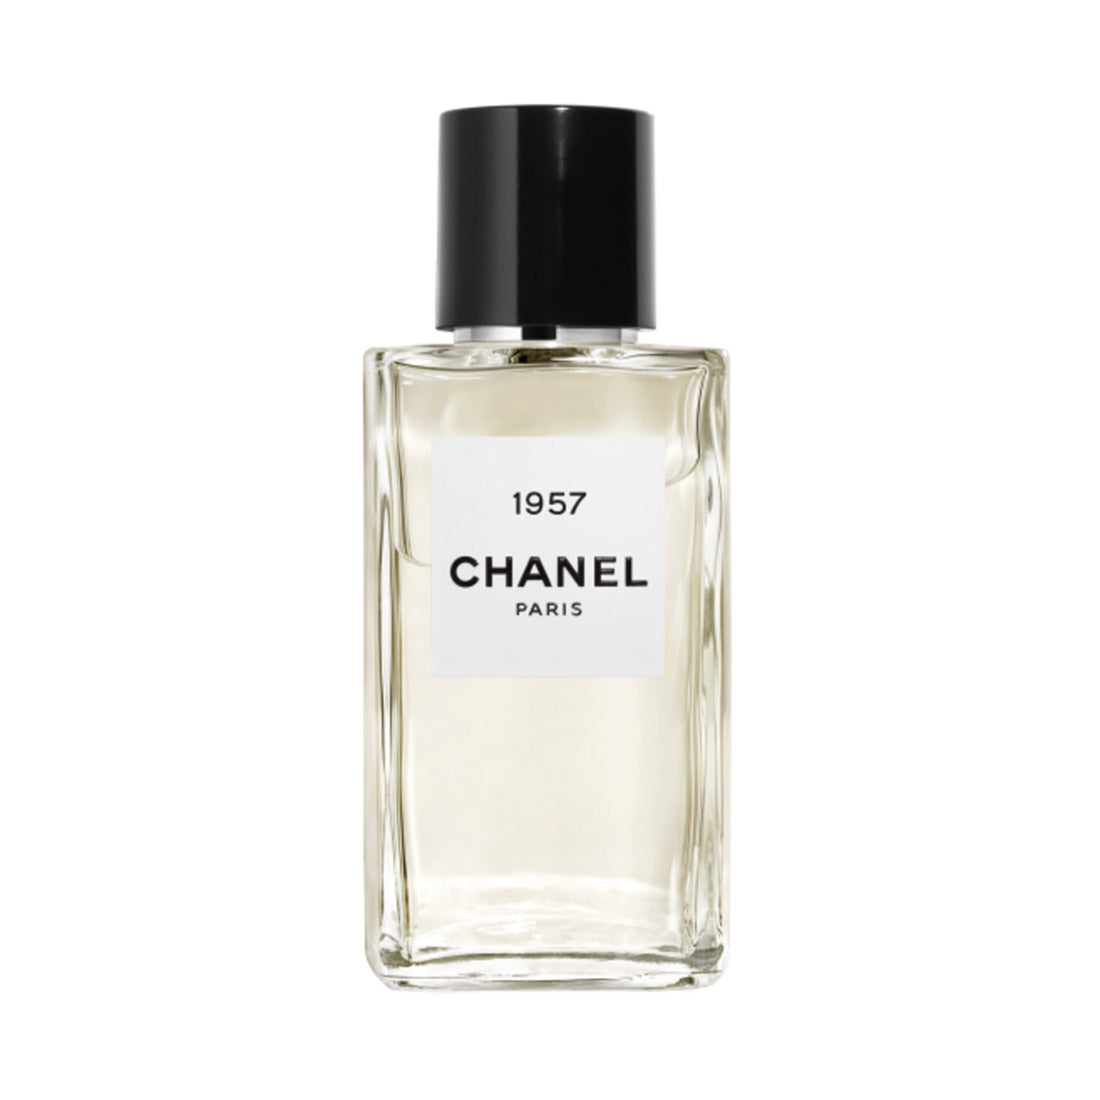 Chanel Paris 1957 Les Exclusifs De Chanel Eau de Parfum